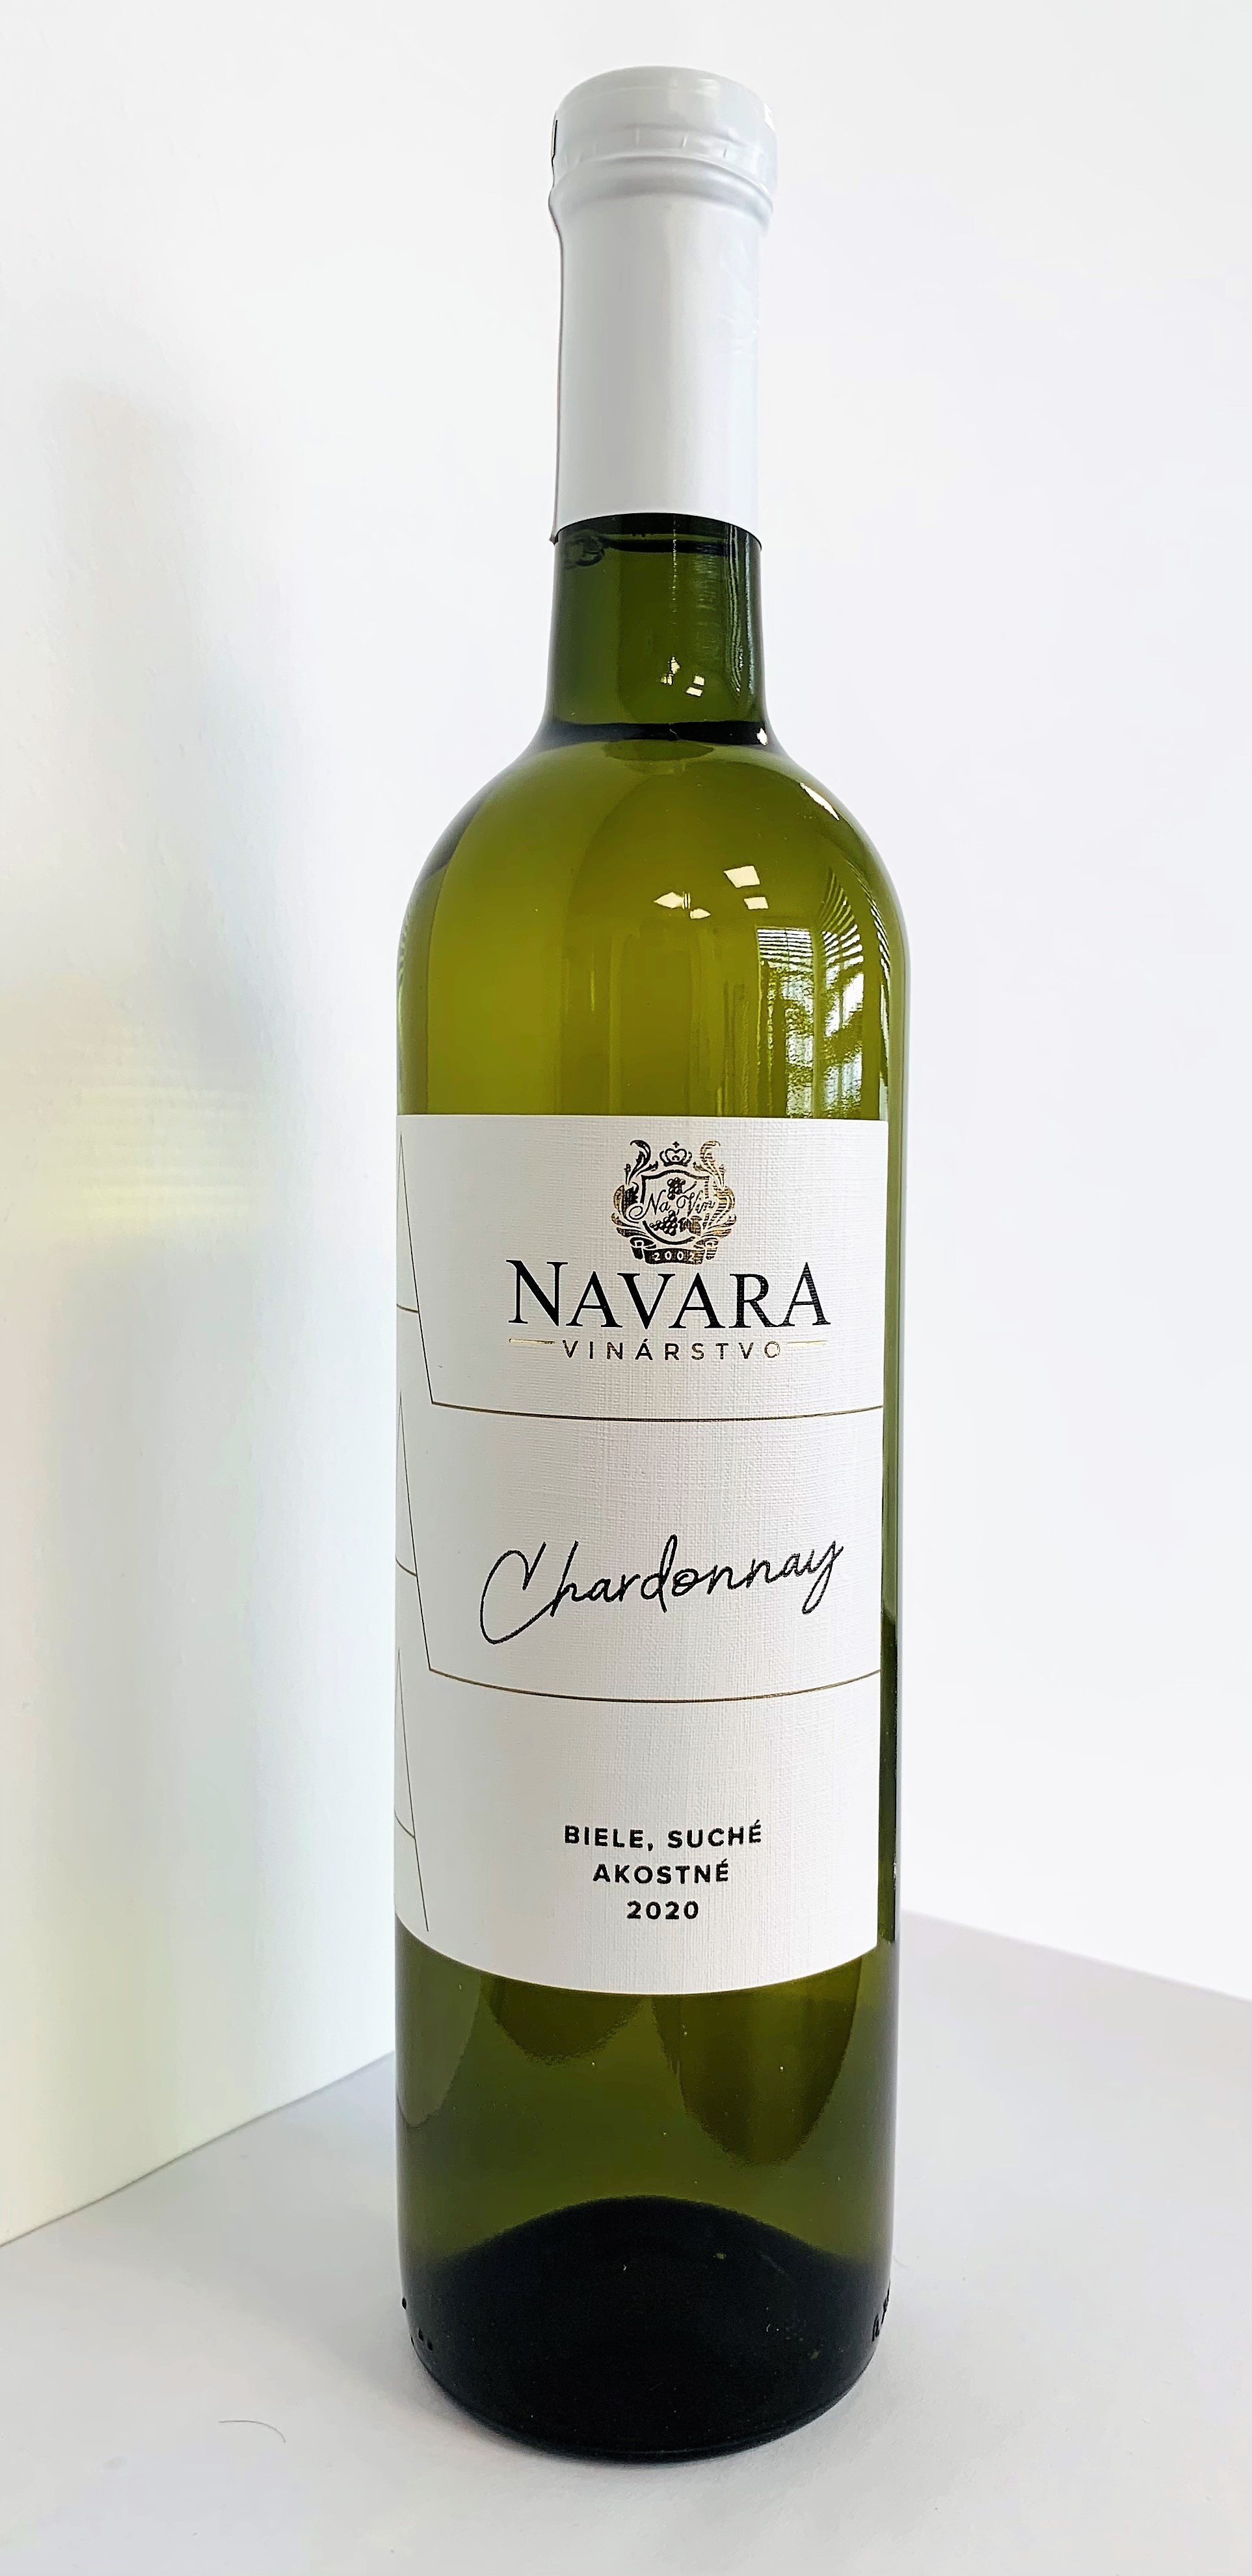 NAVARA - Chardonnay 2020